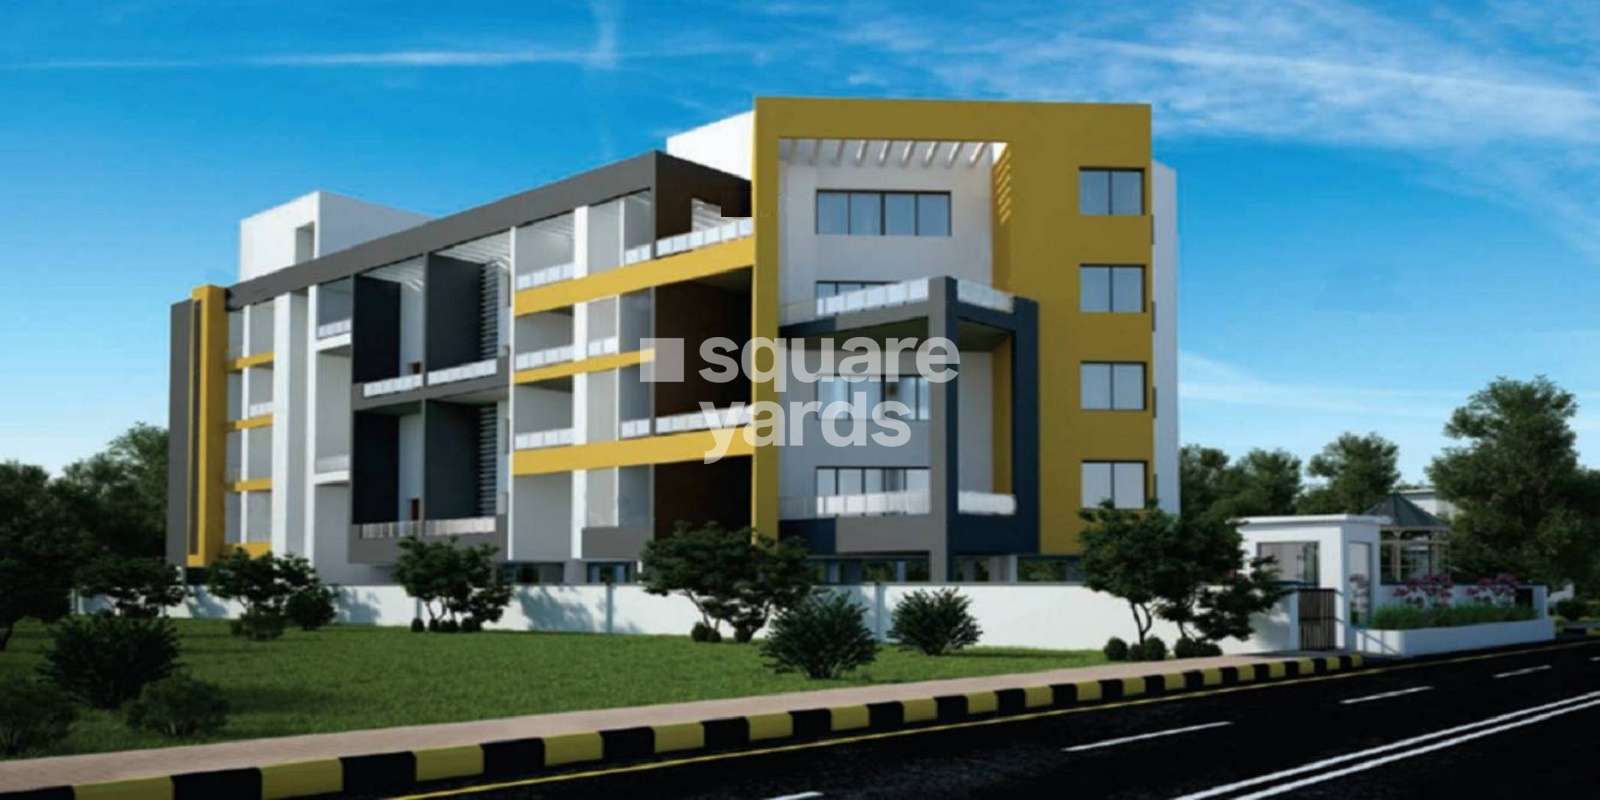 Lajmoh apartment Cover Image